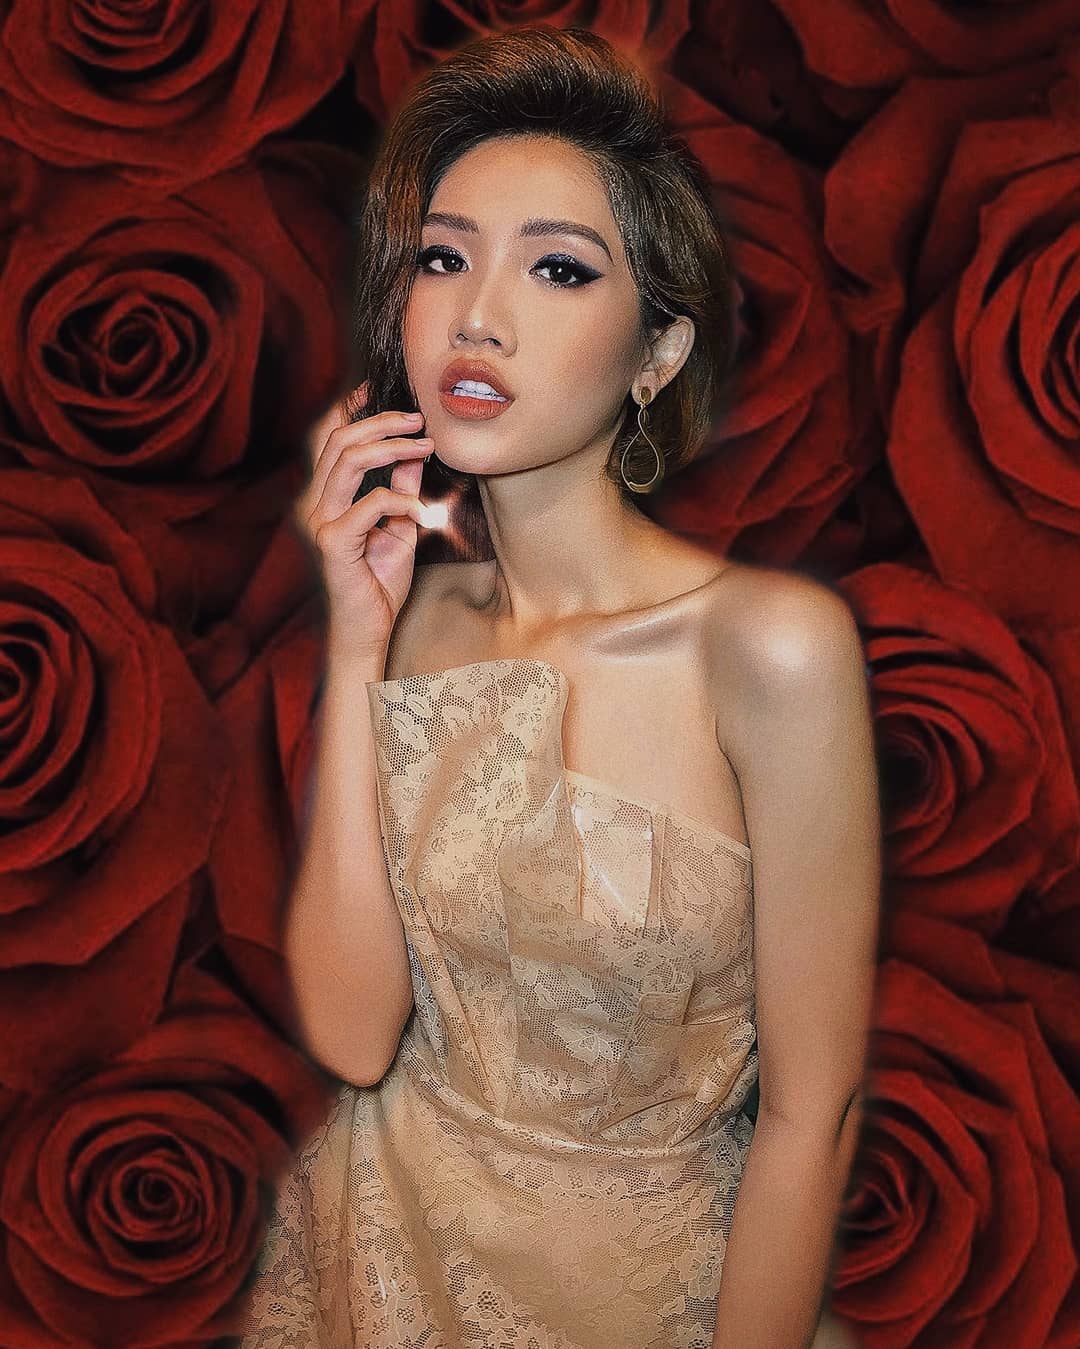 Do Nhat Ha – Most Famous Vietnamese Transgender Girl Instagram